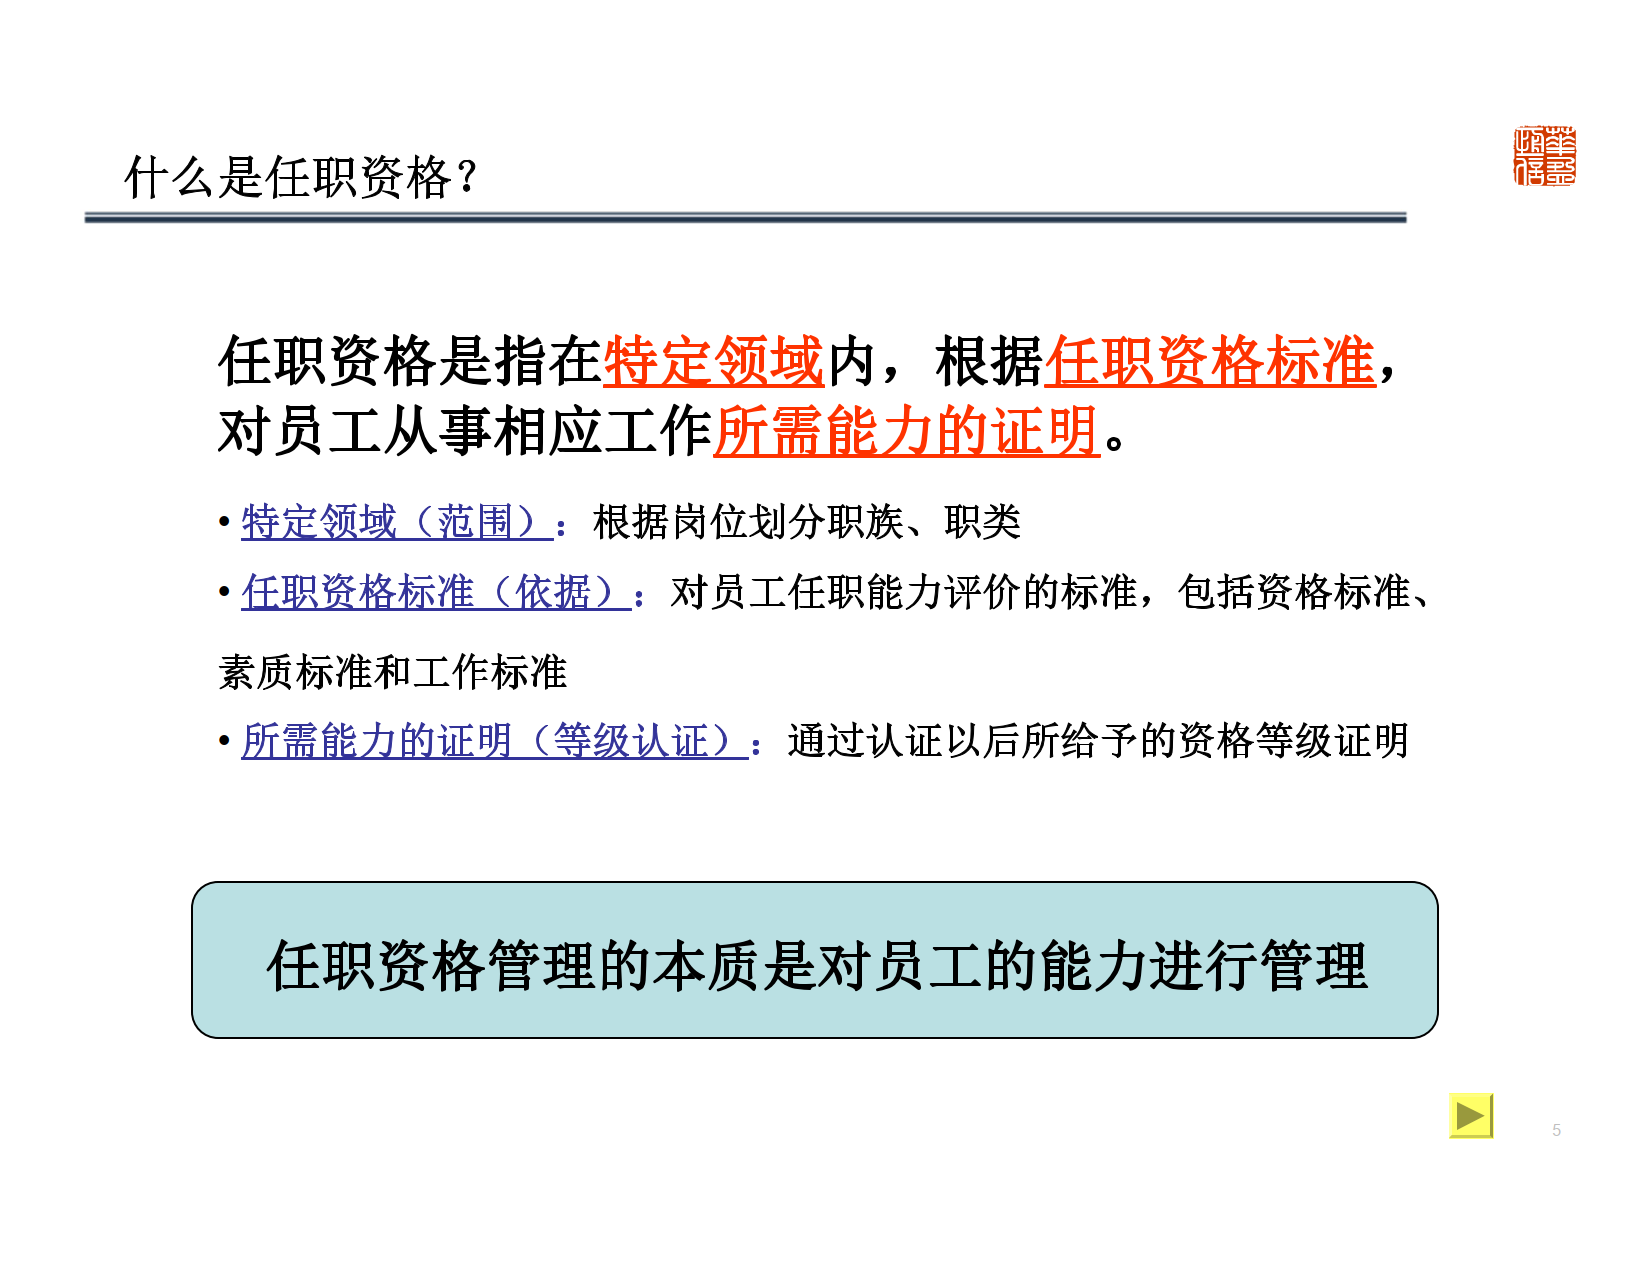 深圳XX管理顾问有限公司-基于能力的任职资格体系设计及应用 Copy_1.png